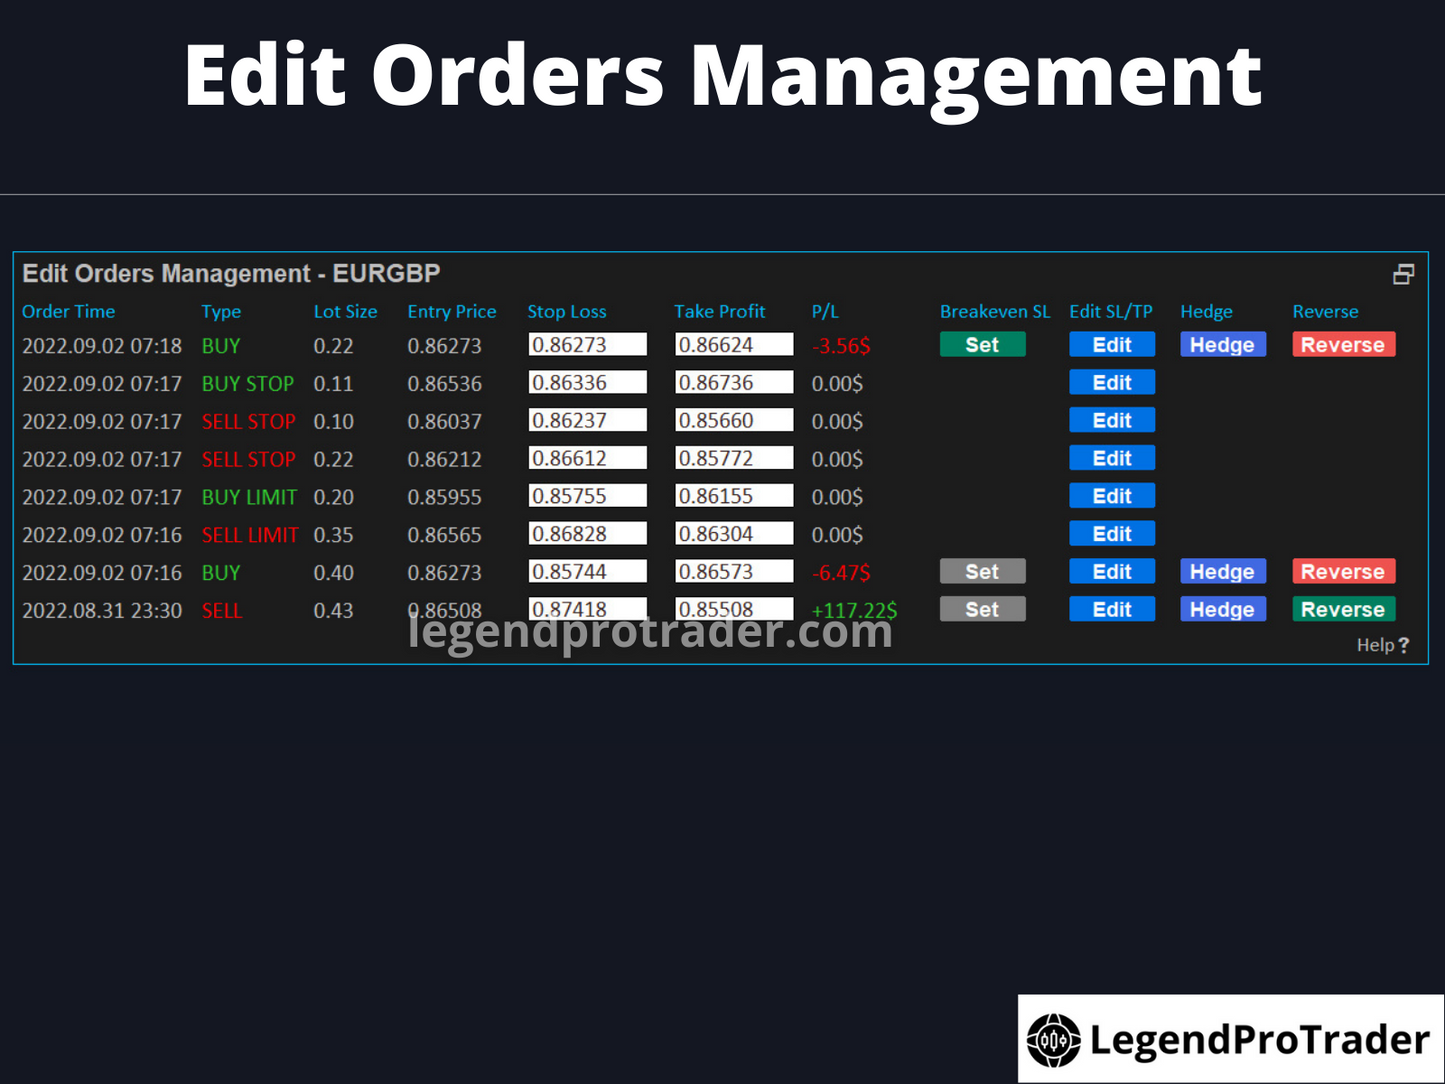 Legend Trade Management System (LTMS) V9